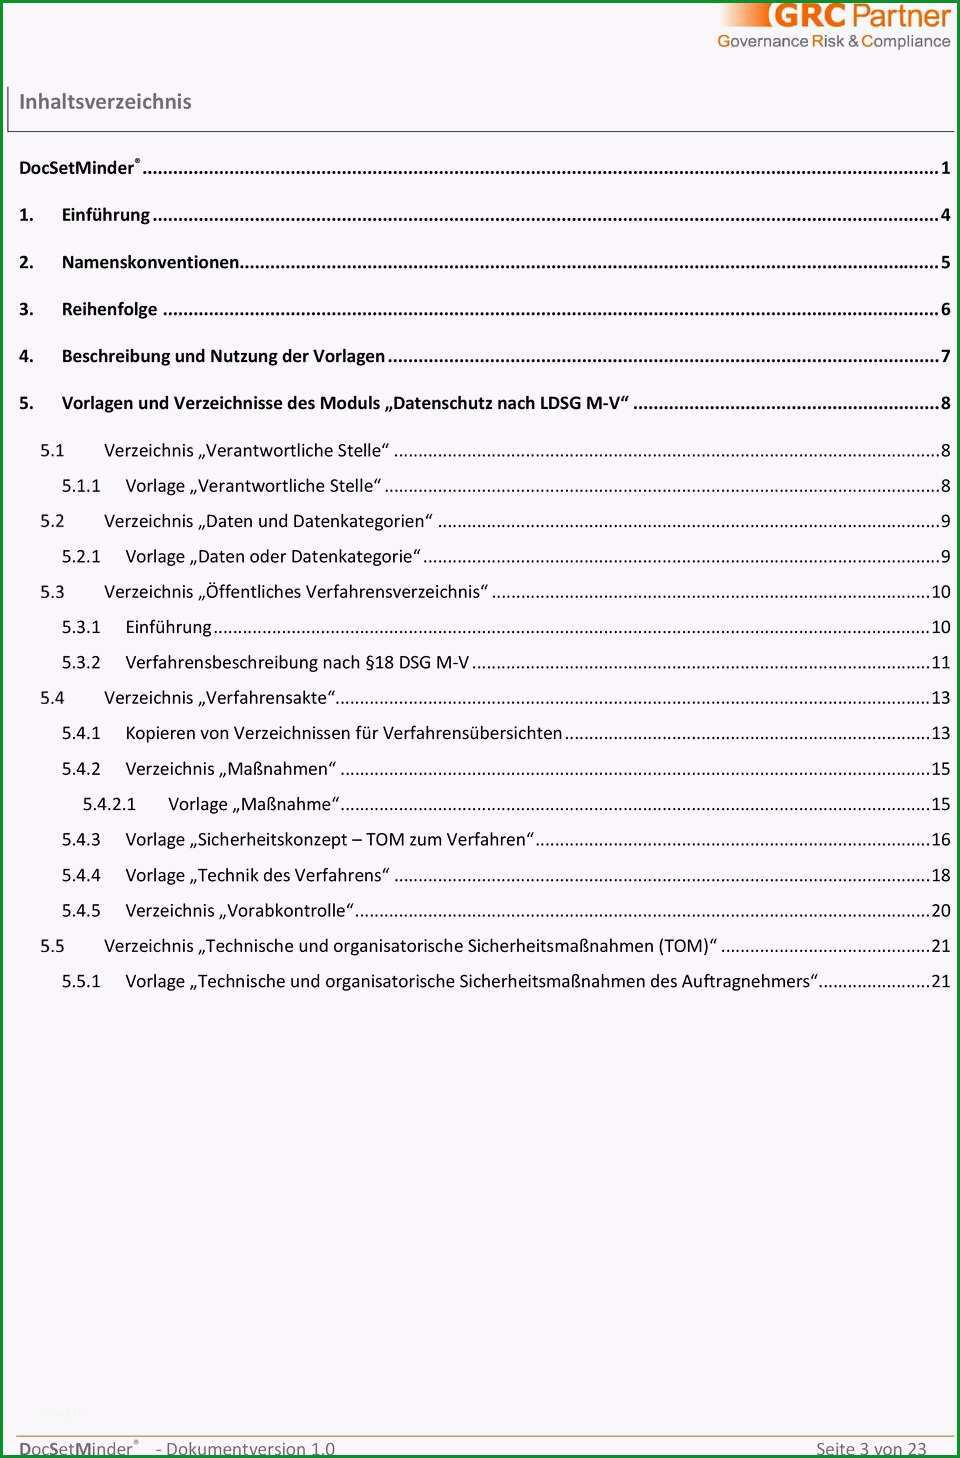 Docsetminder modul datenschutz ldsg m v dokumentationsleitfaden dsm handbuch nr 004